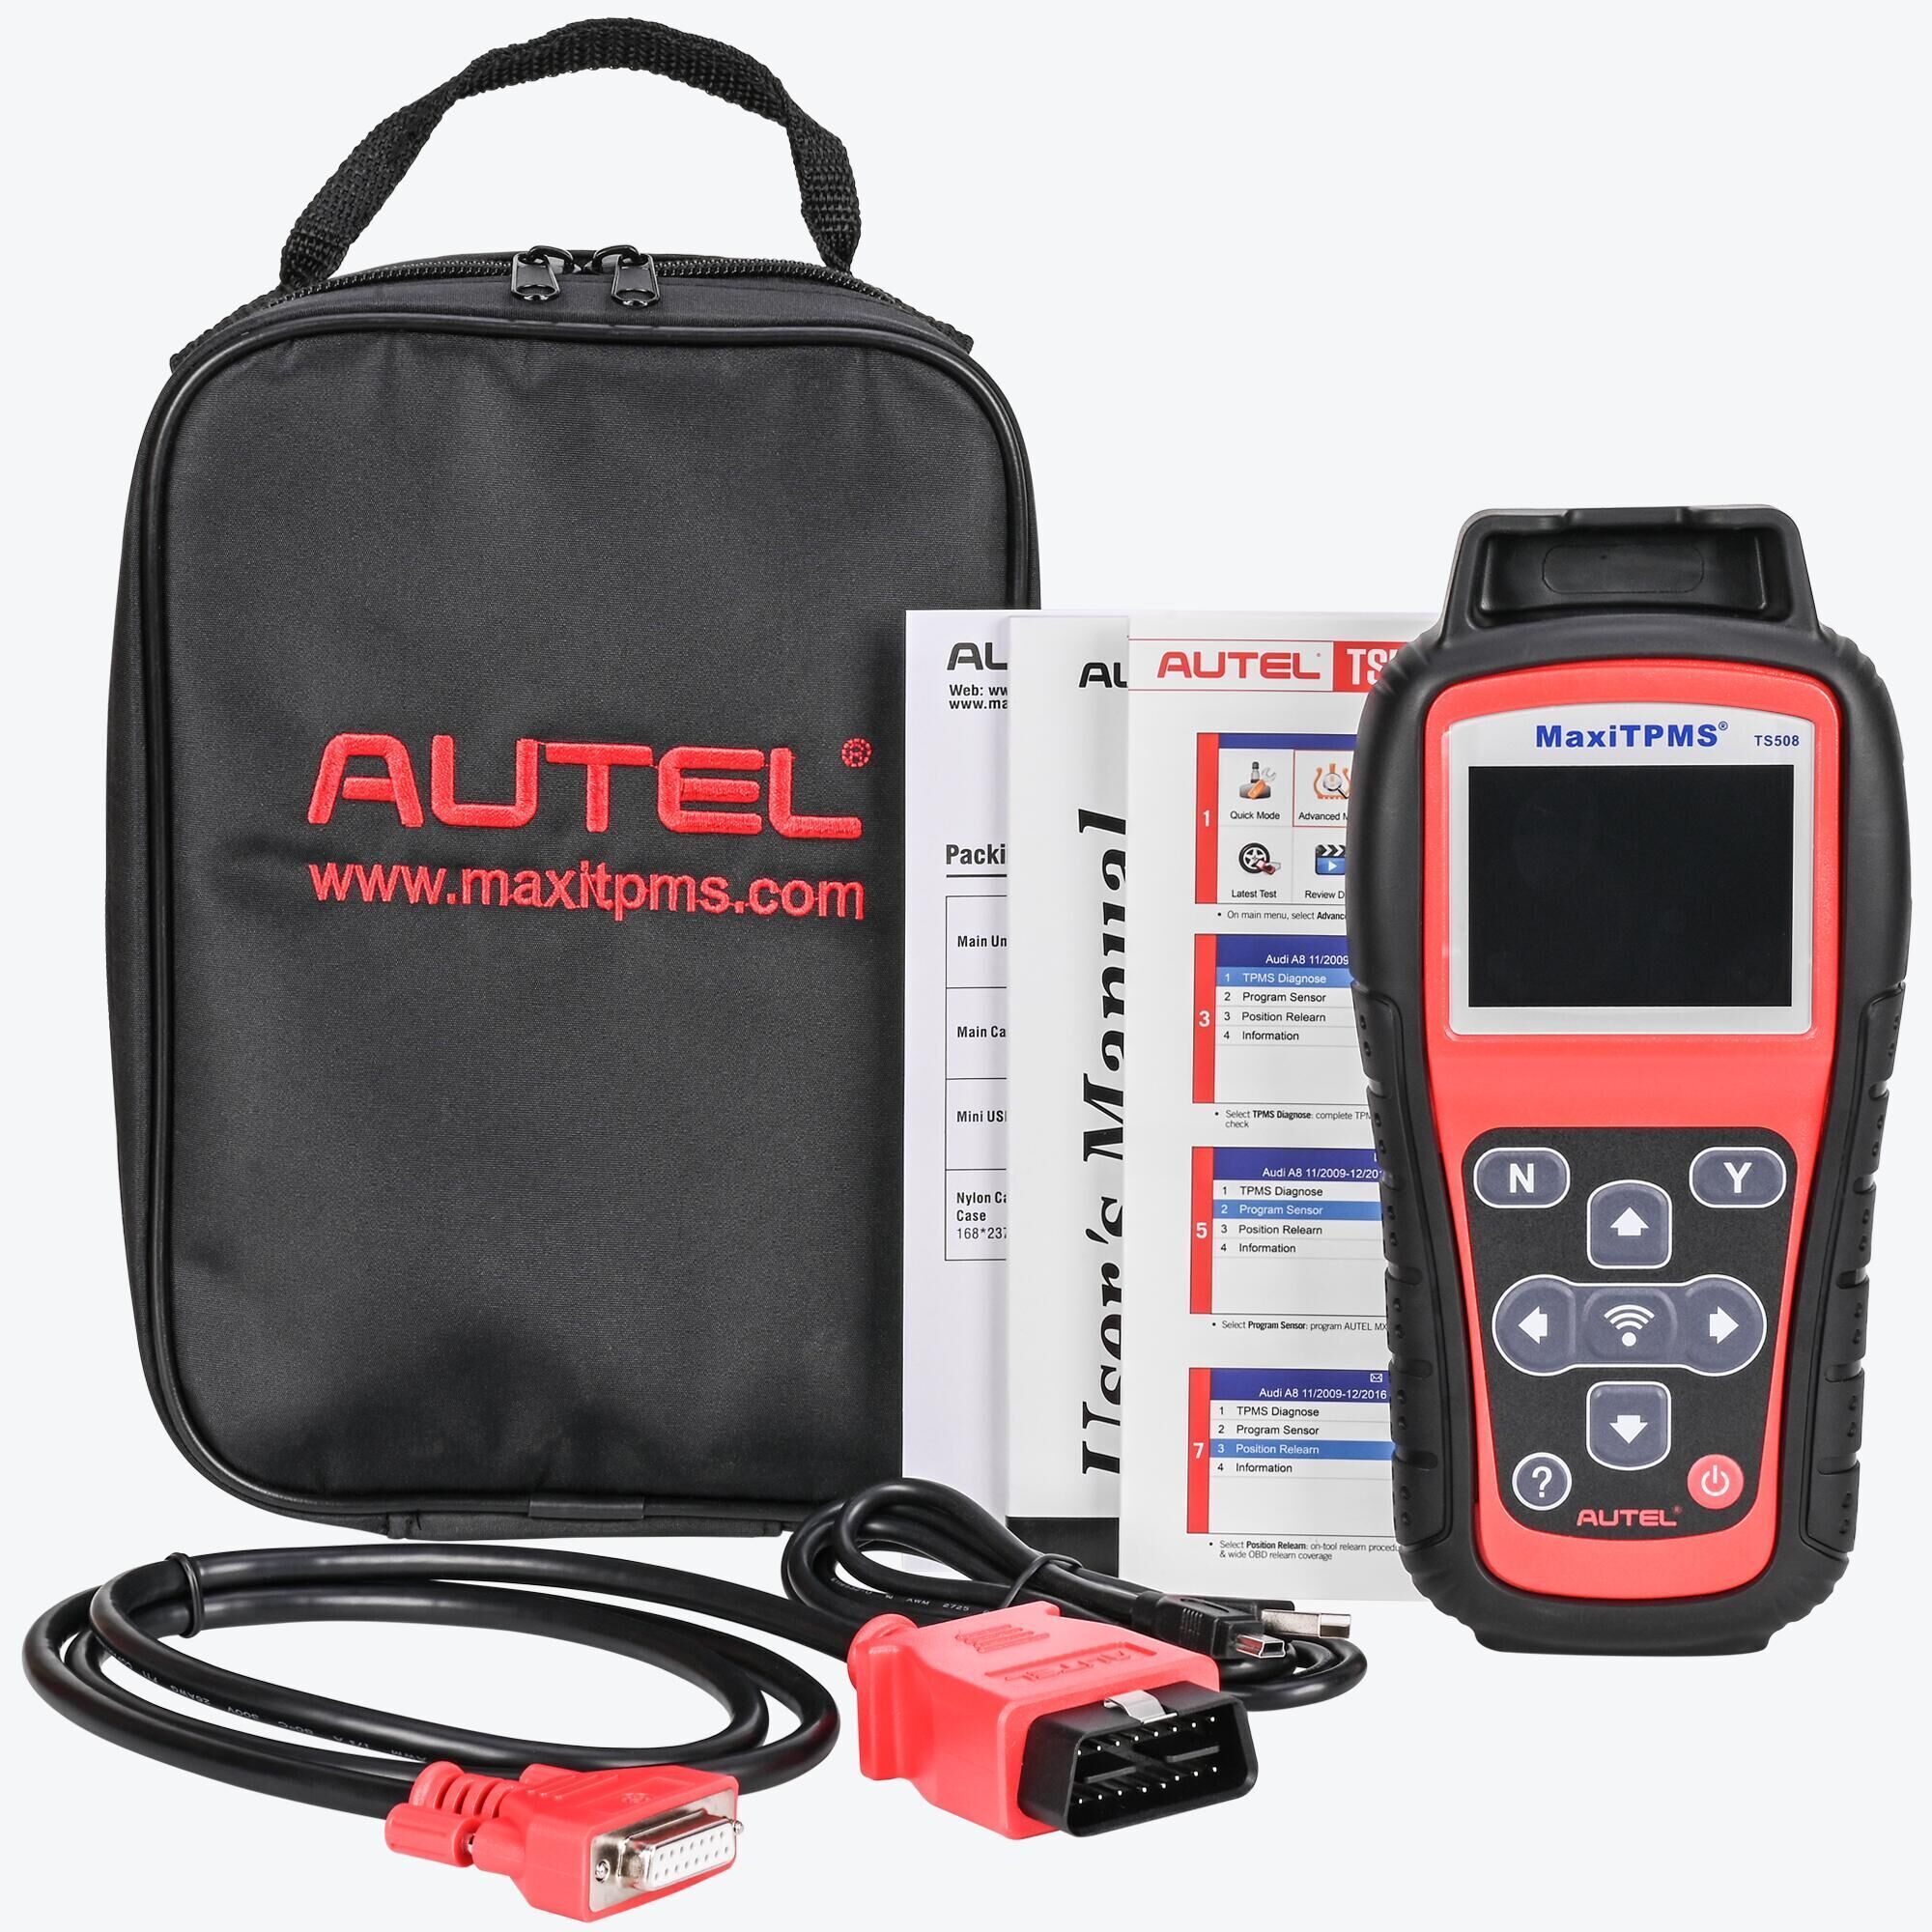 Autel MaxiTPMS TS508WF (NEW)TPMS diagnostic & service tool –